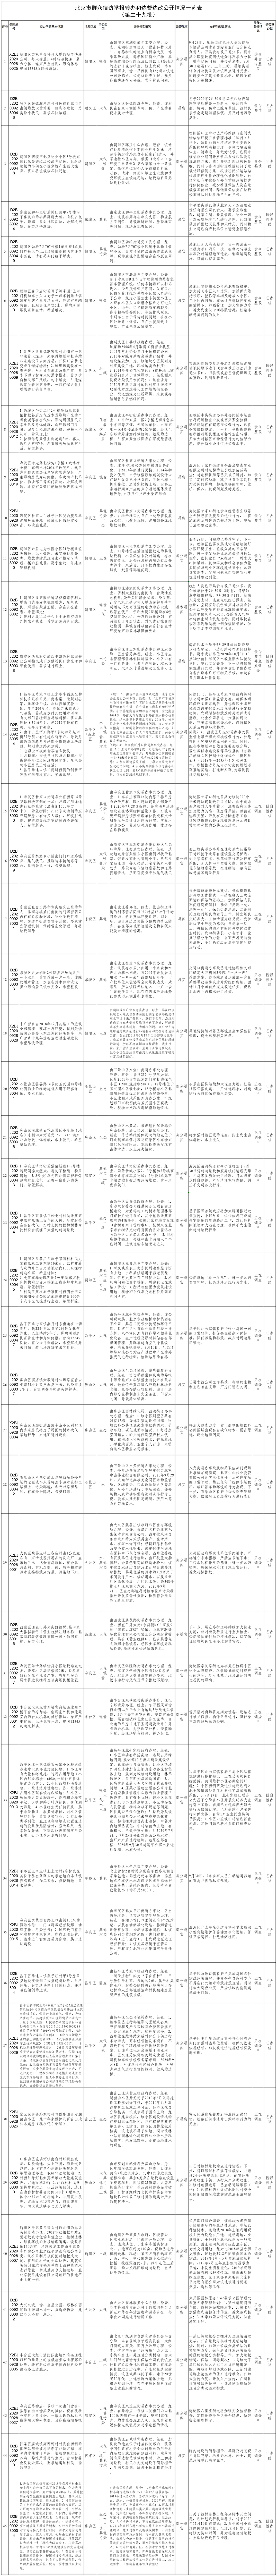 北京市群众信访举报转办和边督边改公开情况一览表(第二十九批)